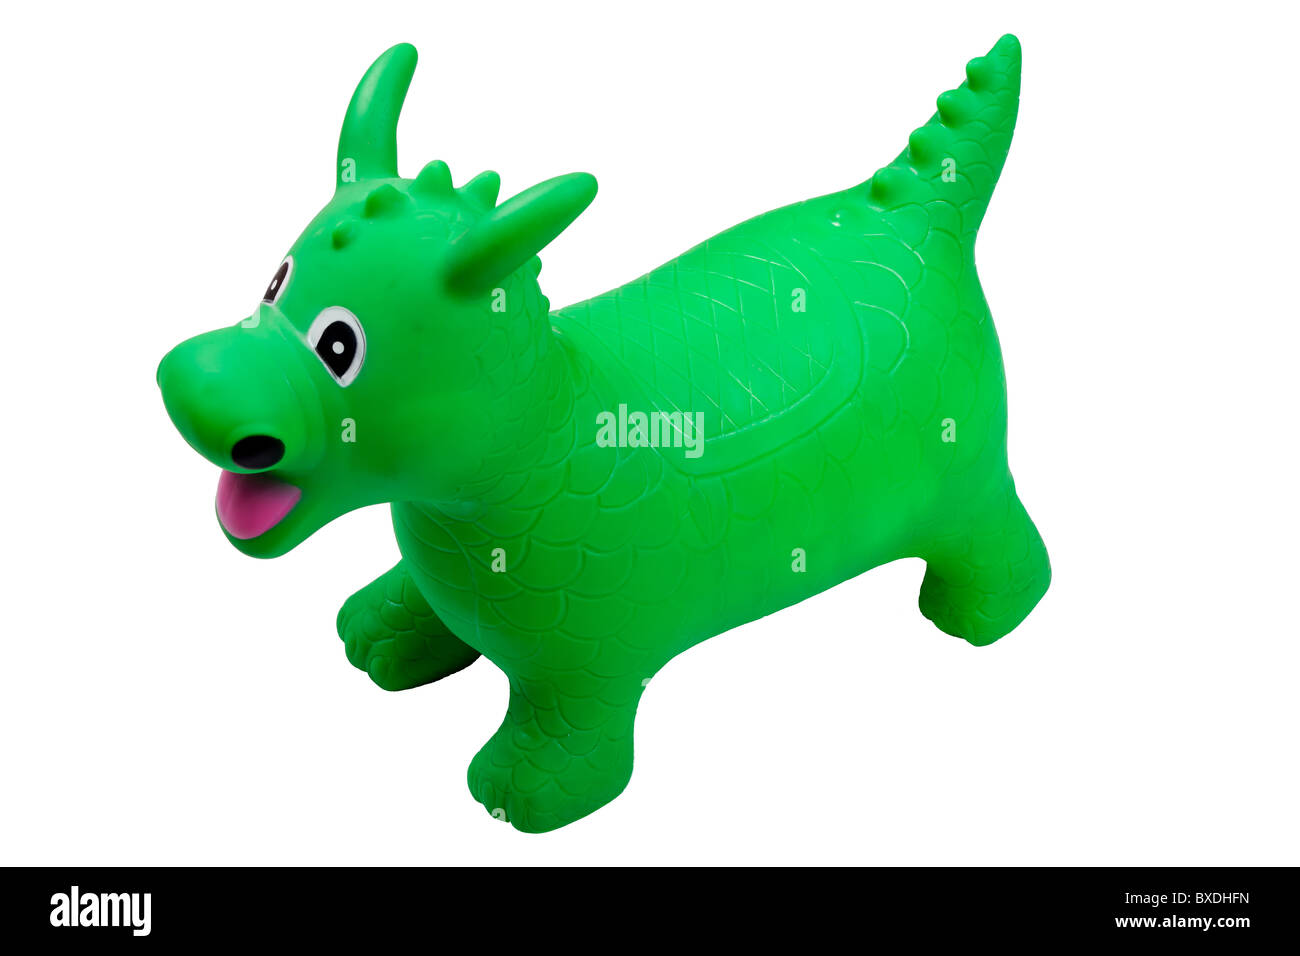 Un jouet gonflable vert dragon pour l'équitation. Isolated on white Banque D'Images